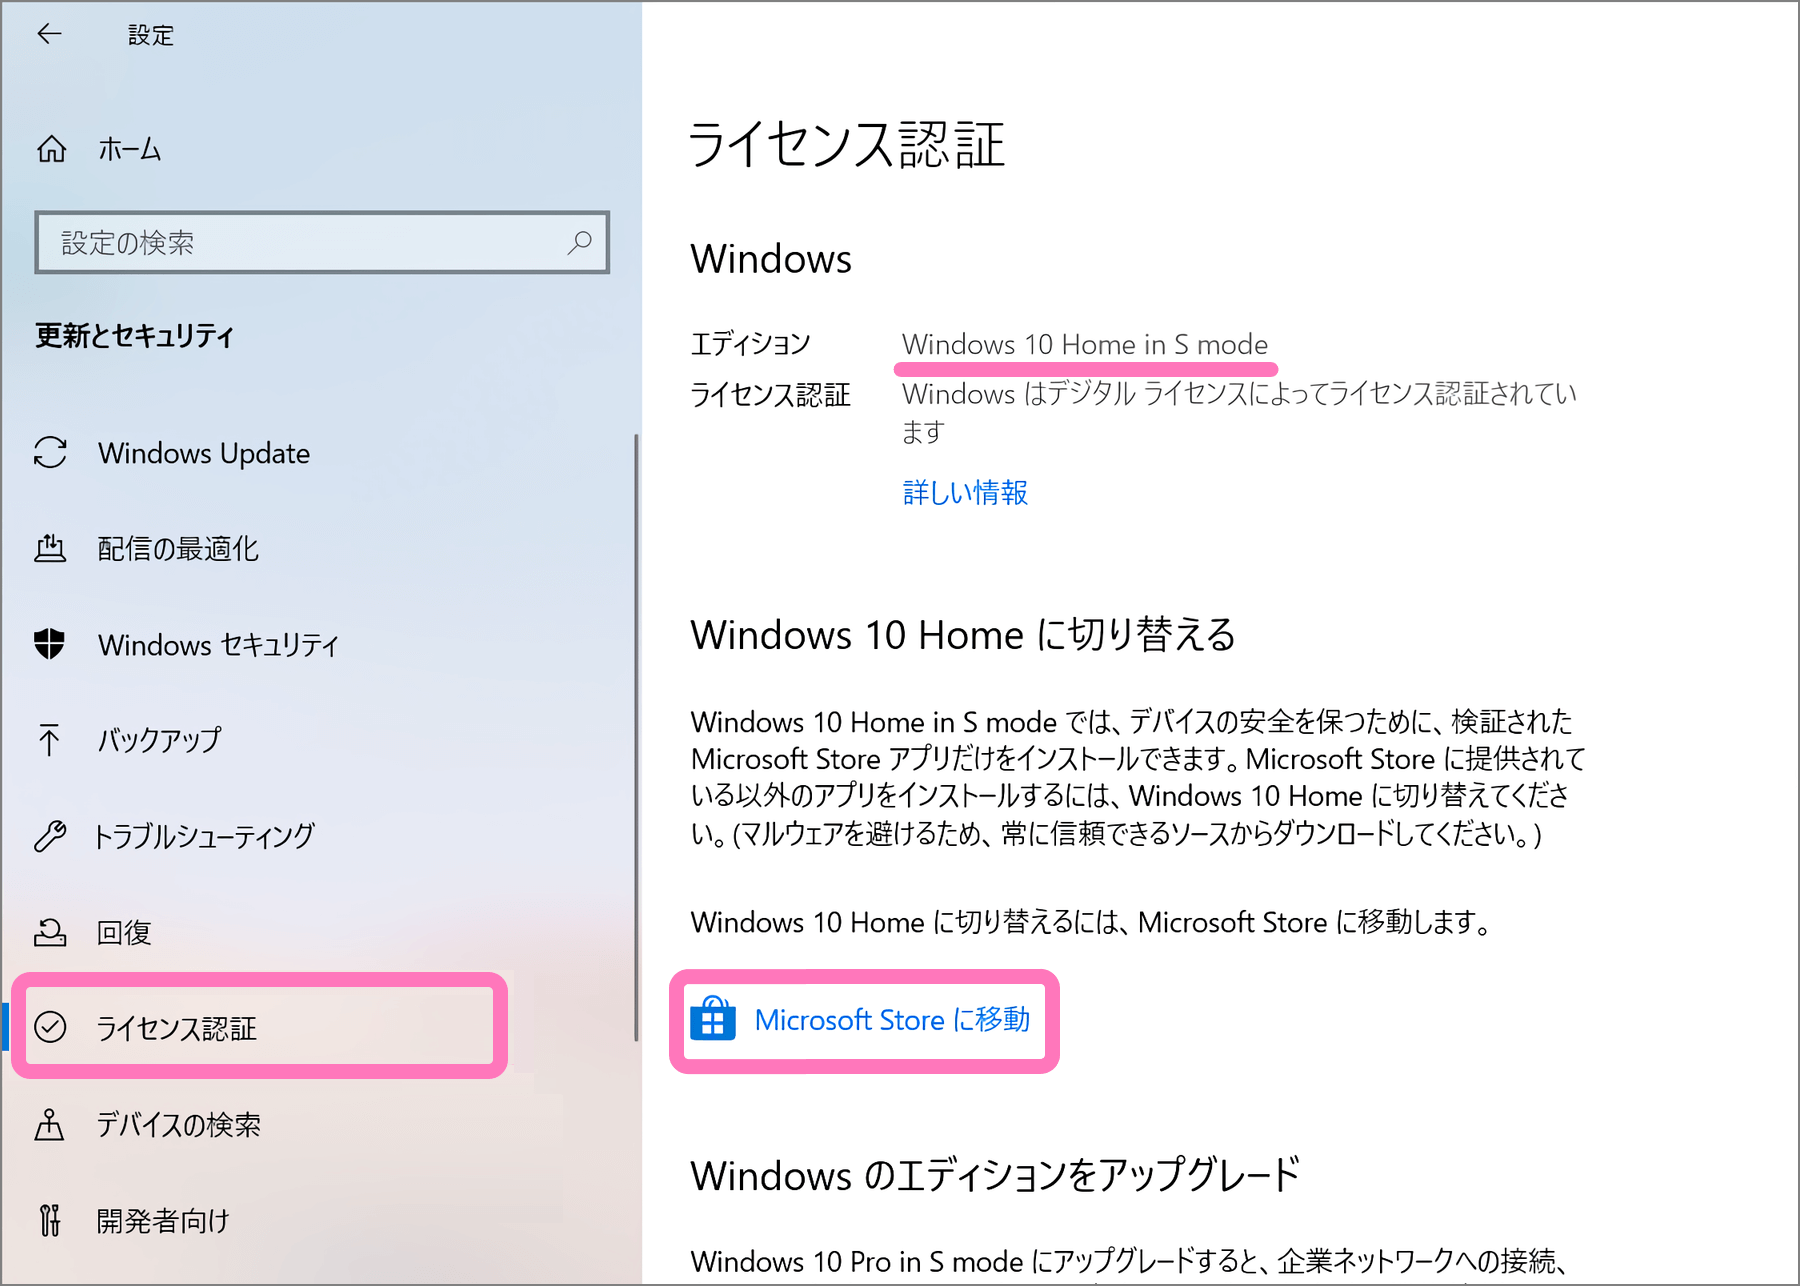 [ライセンス認証] を選択して Microsoft Store へ移動